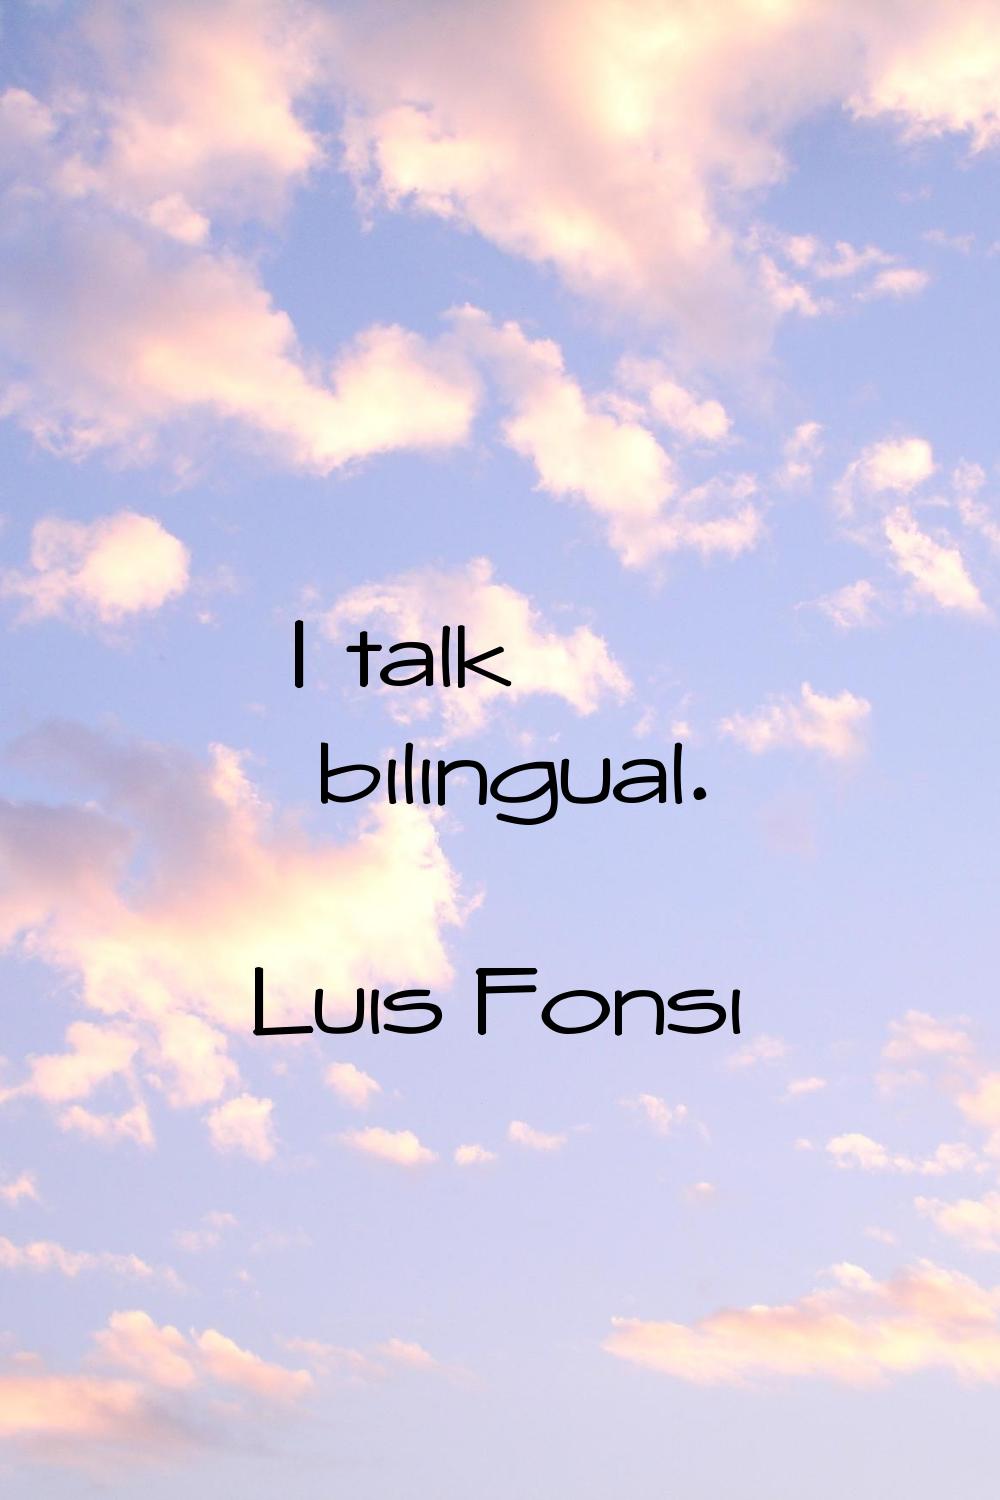 I talk bilingual.